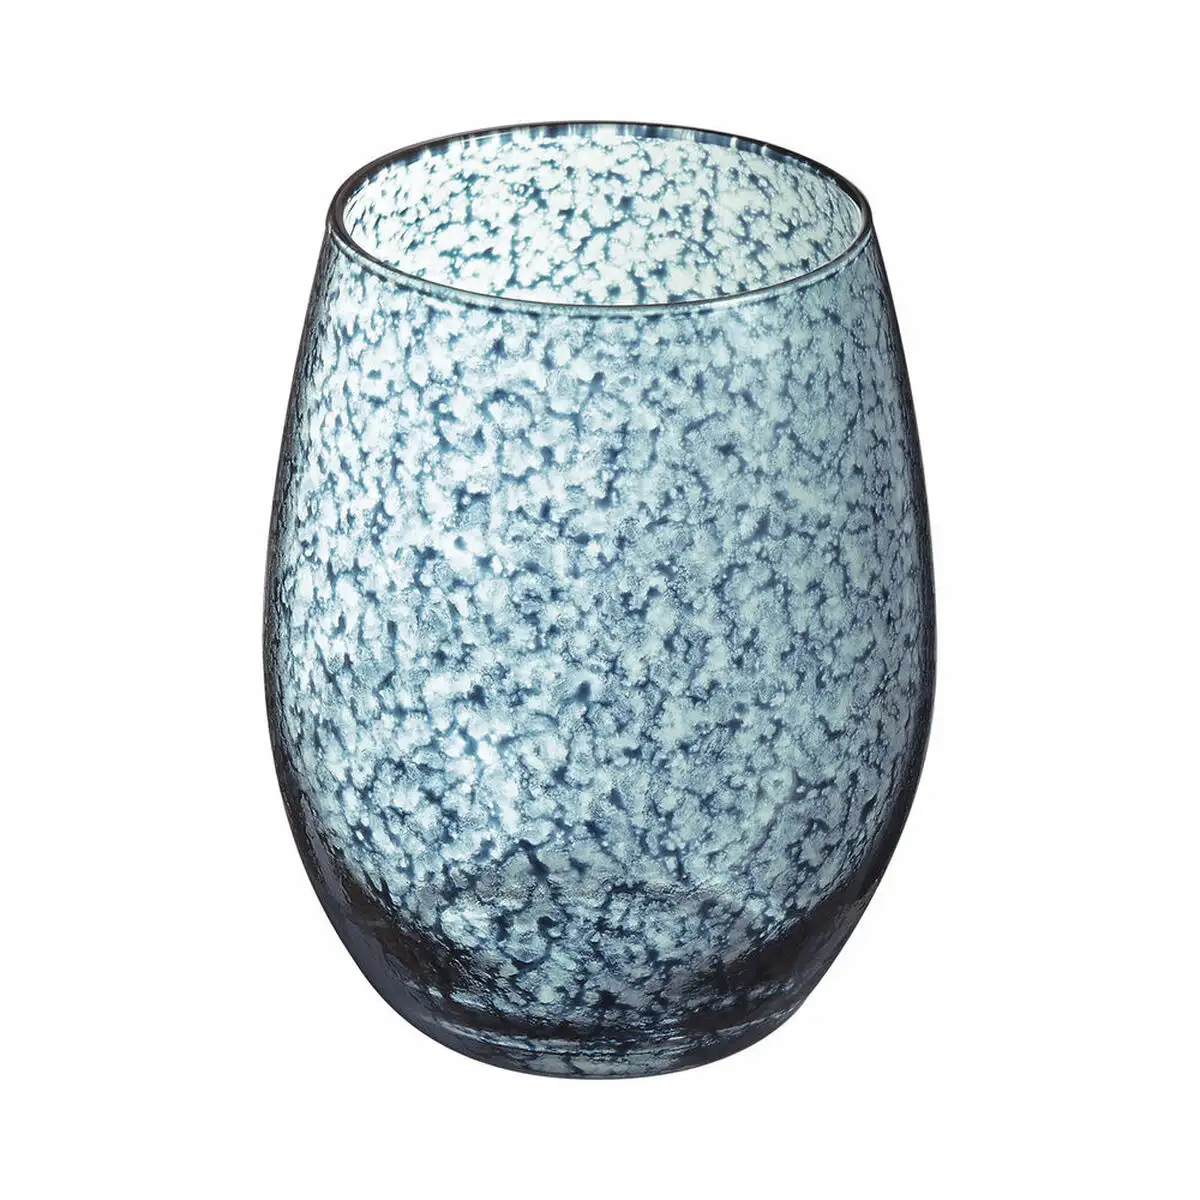 Set de verres chef sommelier primary handcraft 6 unites bleu verre 36 cl _1311. DIAYTAR SENEGAL - Où Chaque Détail Compte. Naviguez à travers notre gamme variée et choisissez des articles qui ajoutent une touche spéciale à votre quotidien, toujours avec qualité et style.